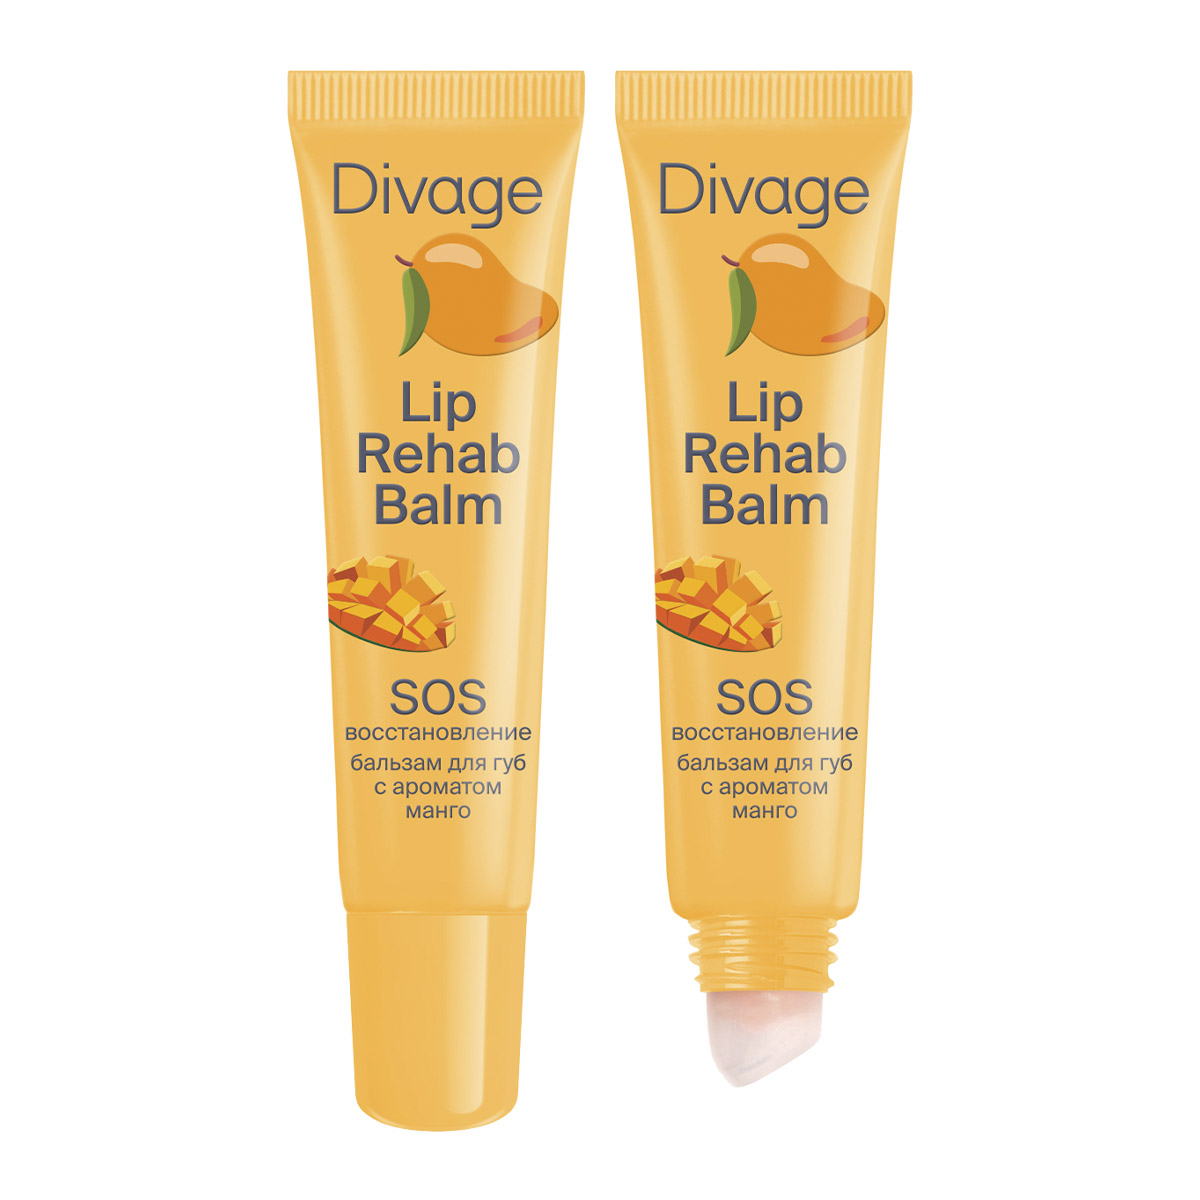 Divage Бальзам SOS-восстановление для губ Lip Rehab Balm, 12 мл (Divage, Губы)